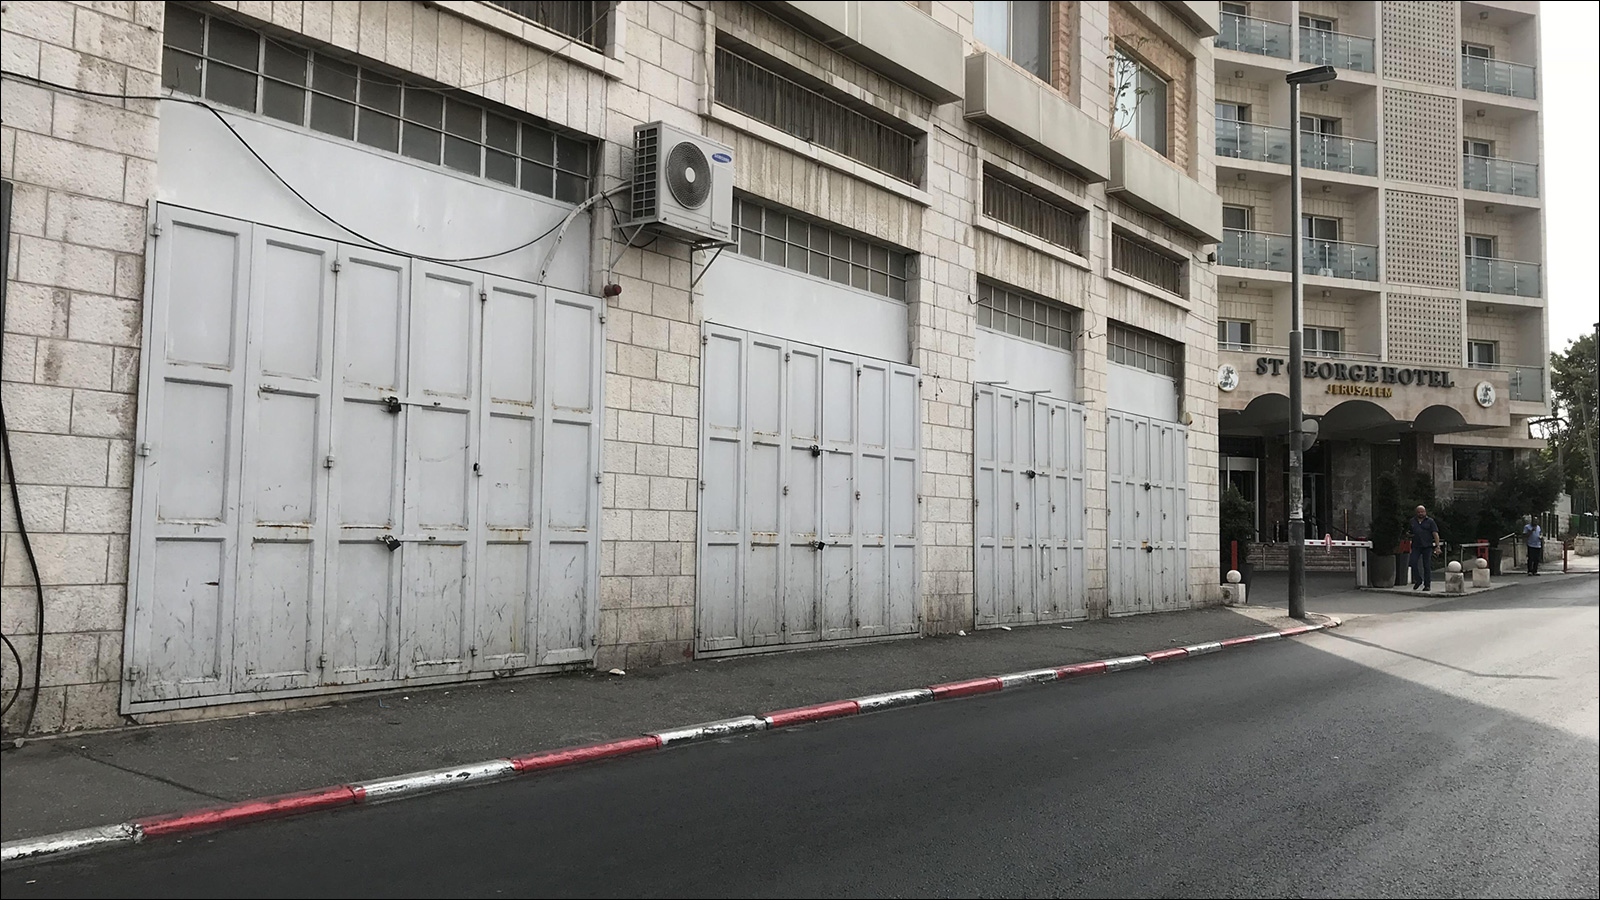 المحلات التجارية في القدس المحتلة أغلقت أبوابها استجابة لقرار الإضراب (الجزيرة)